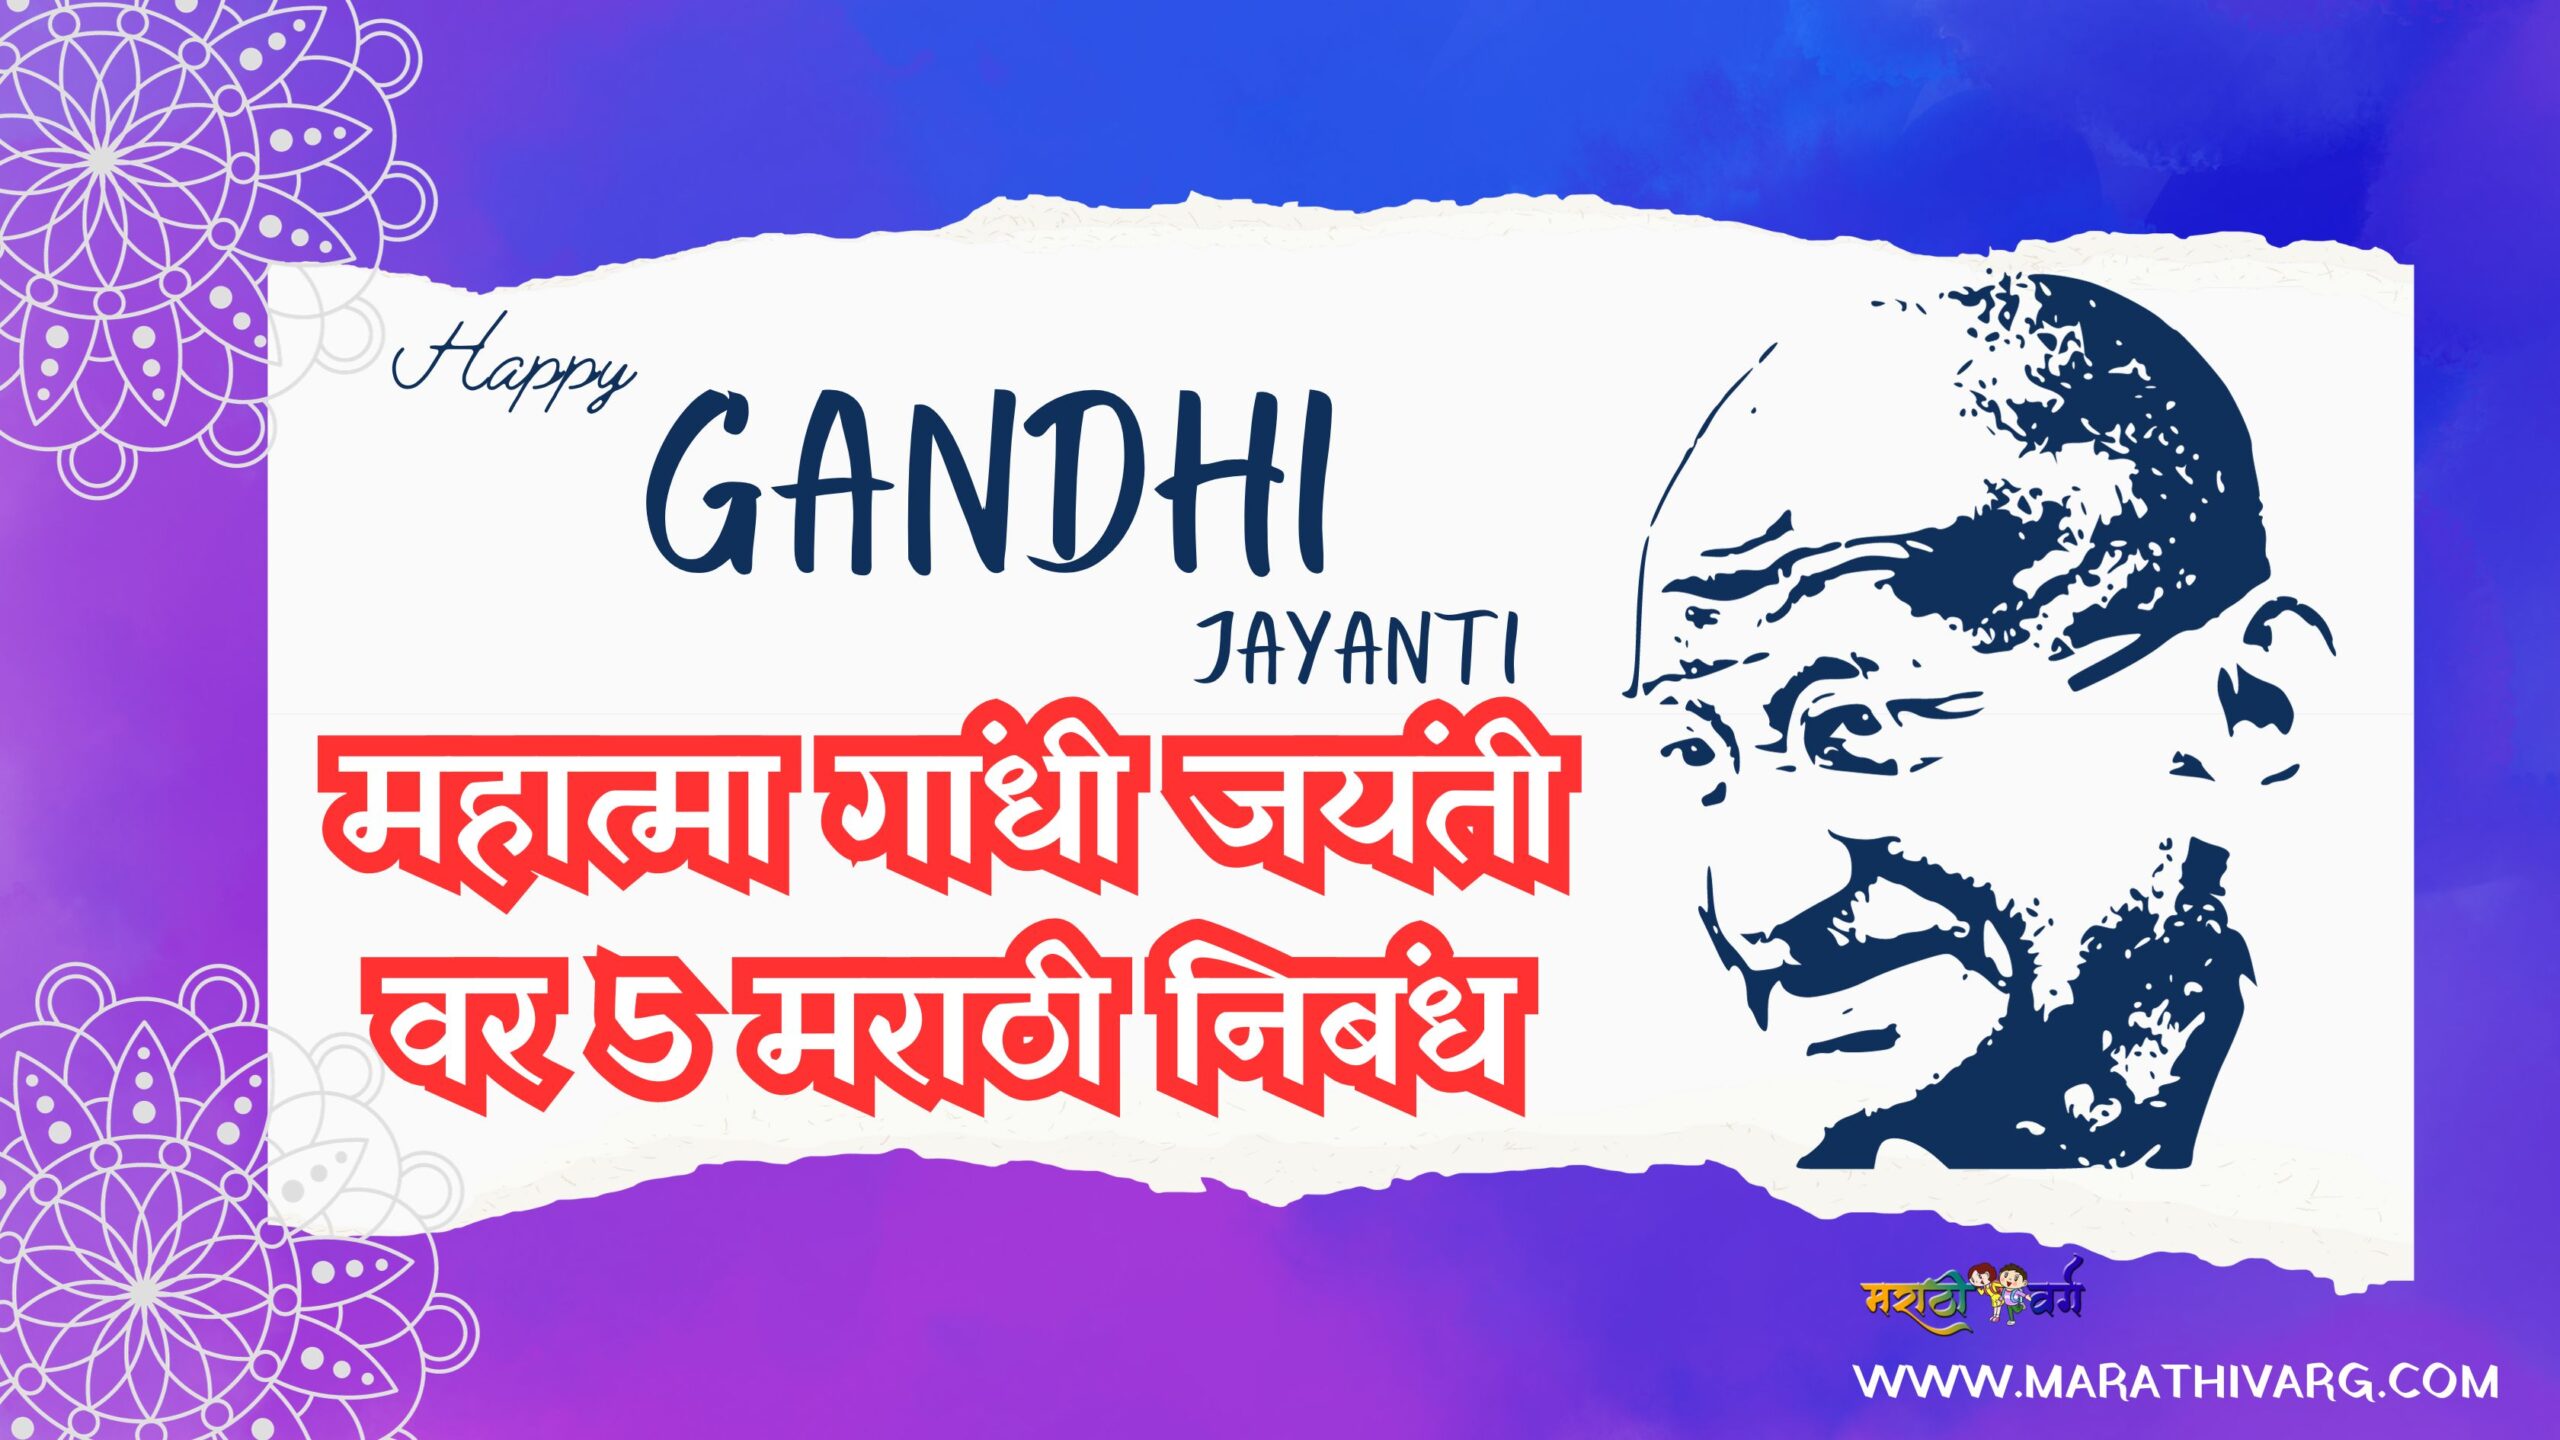 5 top marathi essays with pdf on mahatma gandhi jayanti